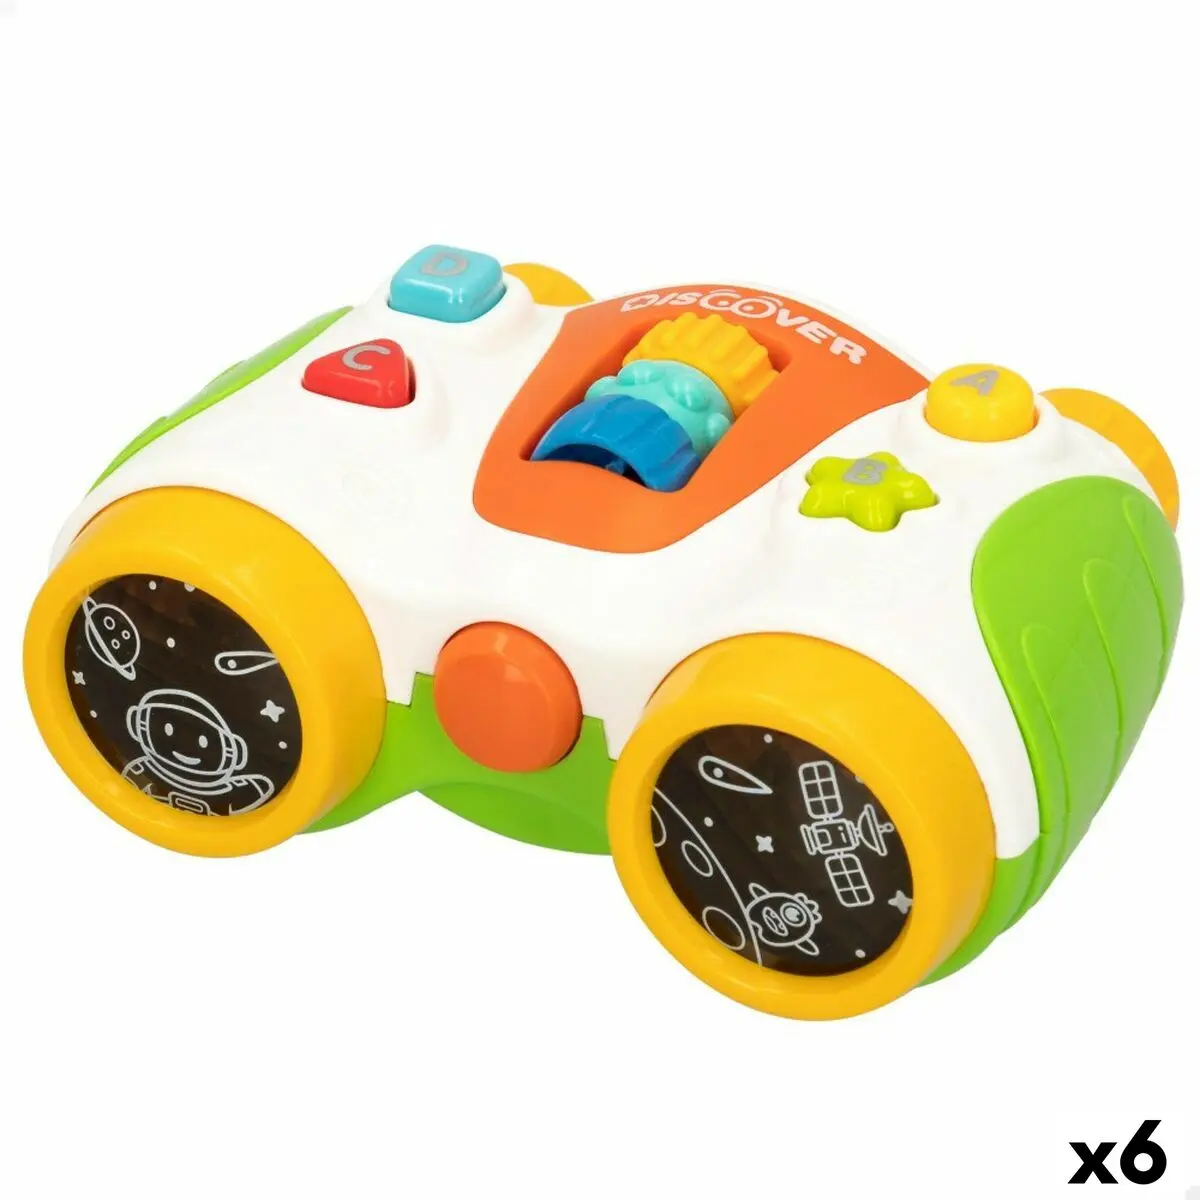 Giocattolo Interattivo per Bambini Colorbaby Binocolo 13,5 x 6 x 10,5 cm (6 Unità)